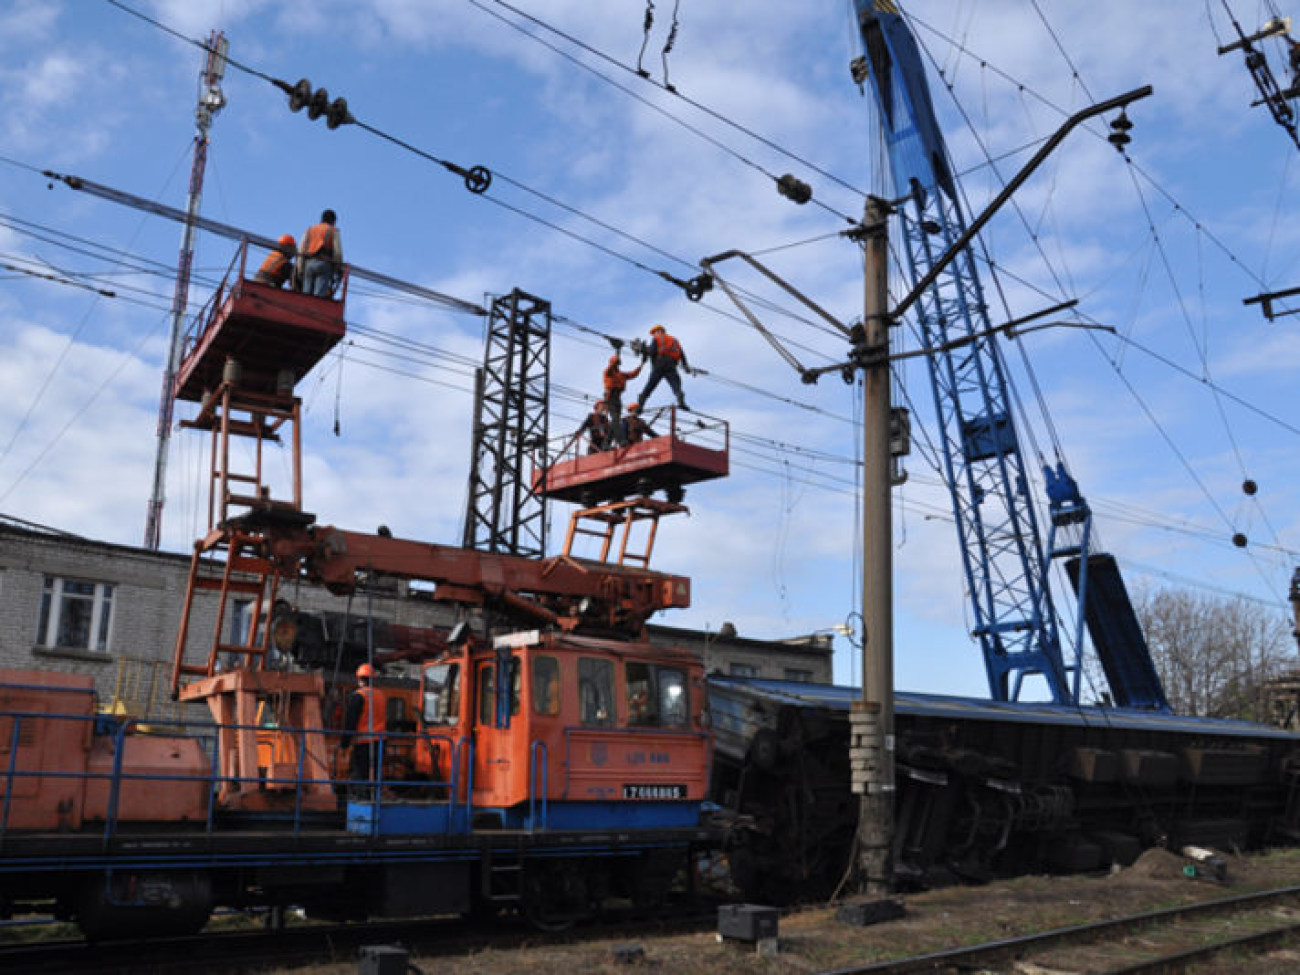 Поезд сошел с рельс возле железнодорожной станции Запорожье-1, 1 ноября 2012г.